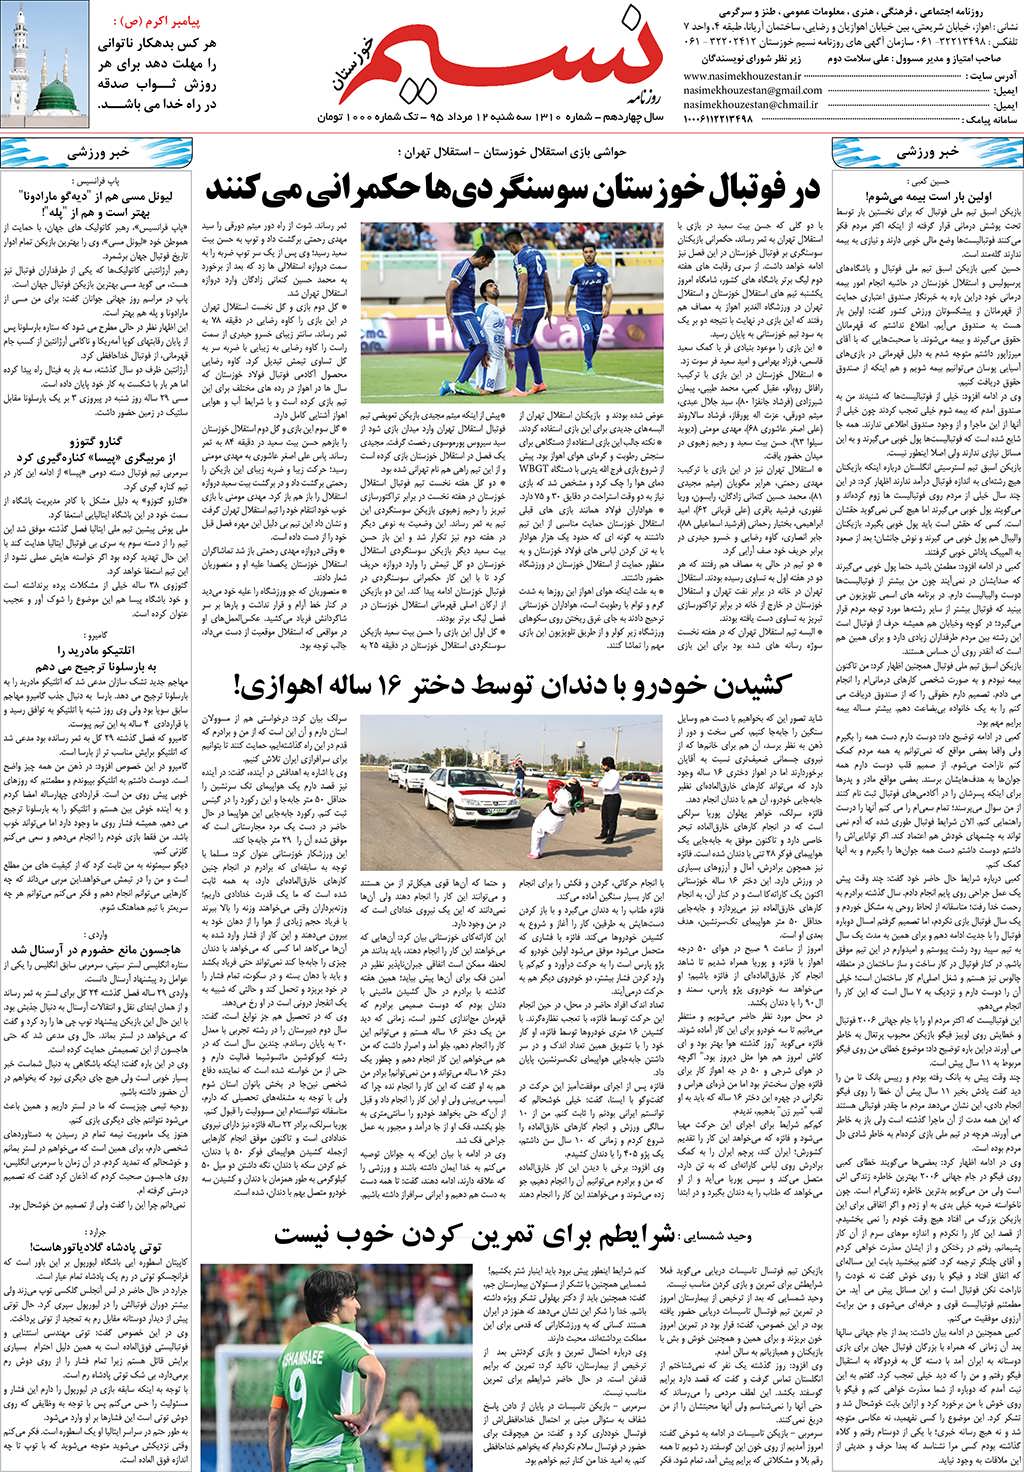 صفحه آخر روزنامه نسیم شماره 1310